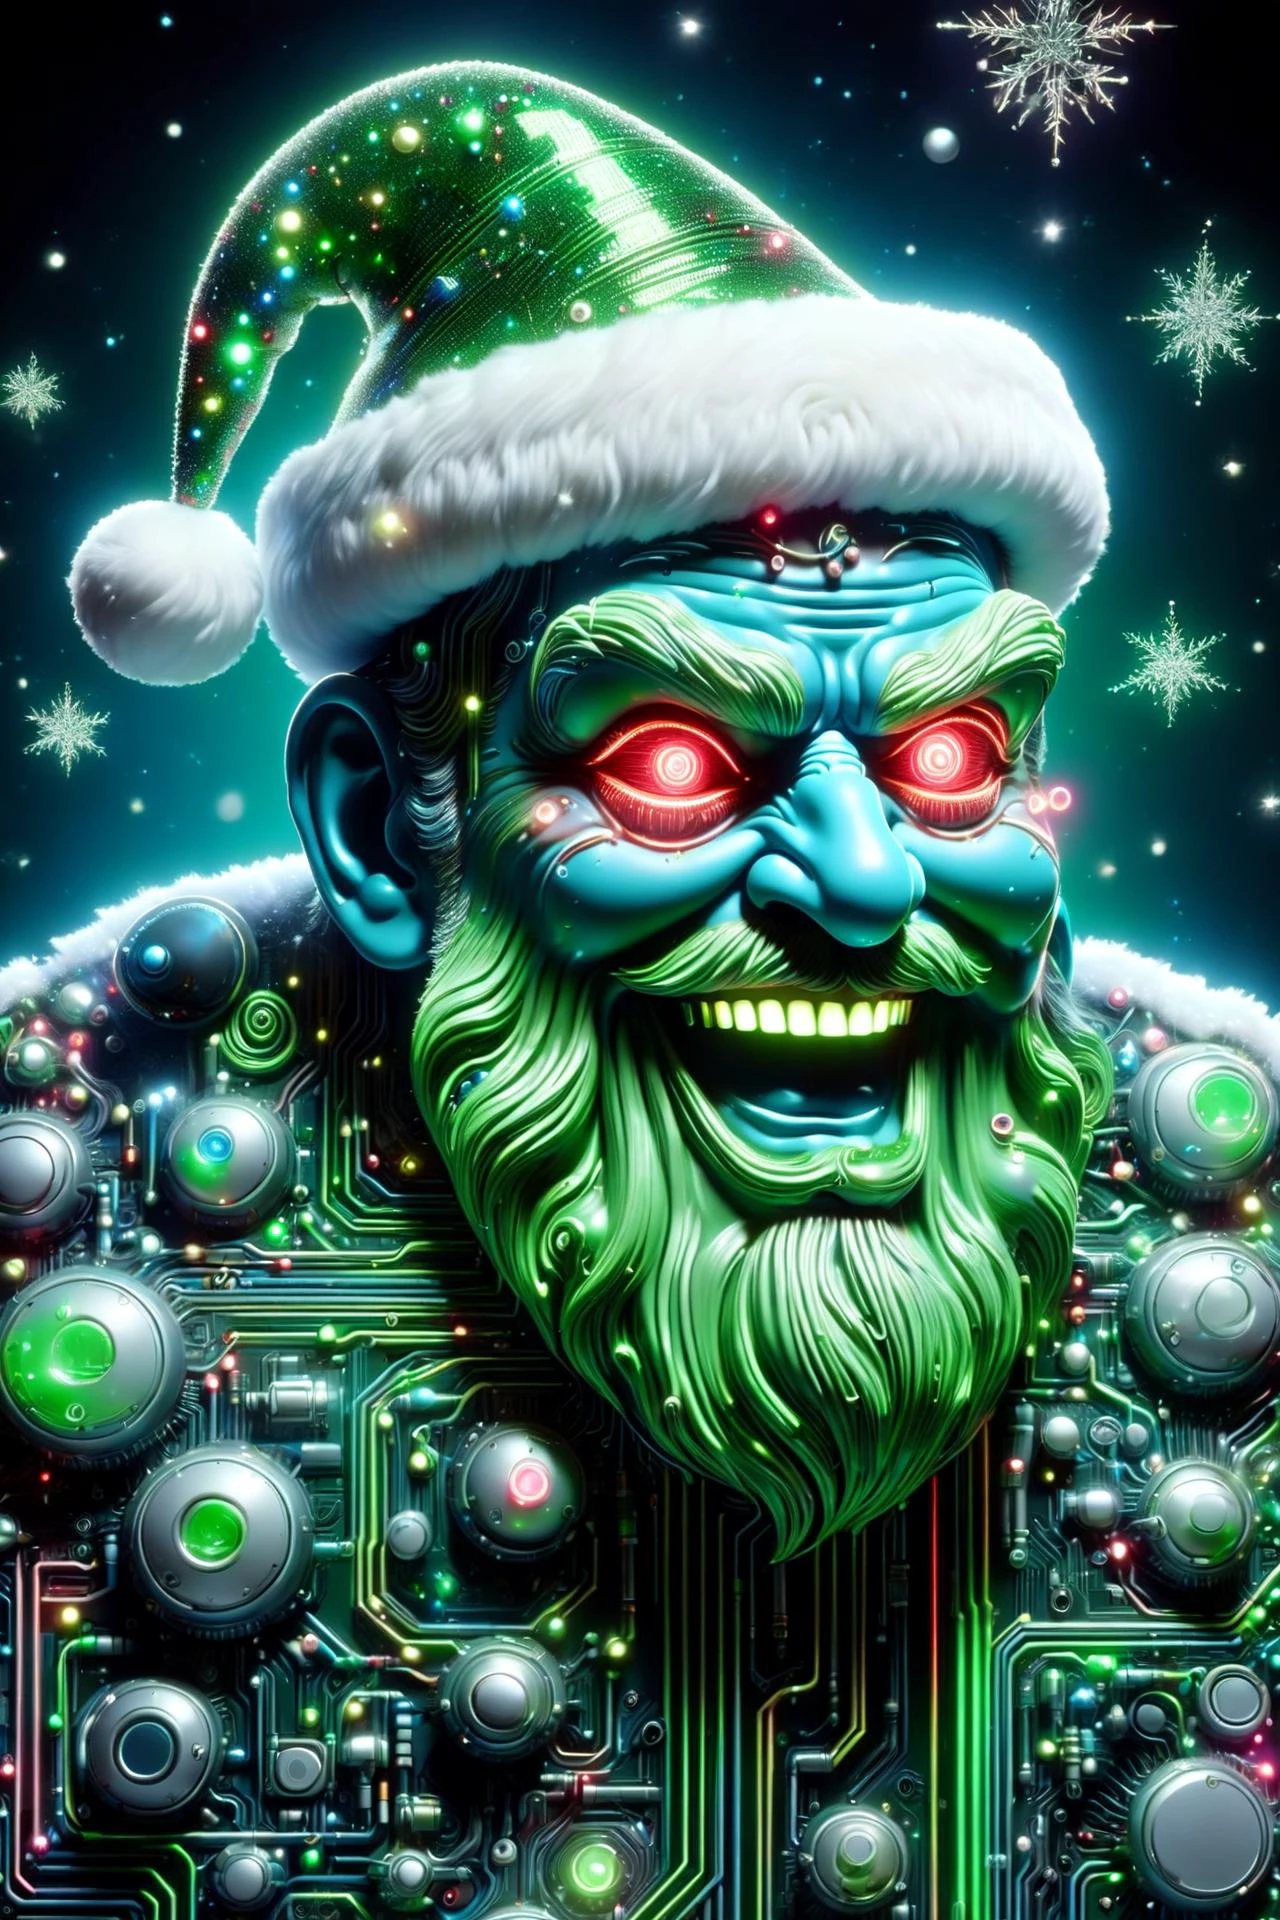 亞倫霍基 (Aaron Horkey) 風格的勞爾半導體製成的聖誕老人頭像, 唐MW15pXL, 霓虹綠色照明, 霓虹綠服裝, (霓虹紅的眼睛:1.3), 漂浮的, 星體, DonMN30nChr1stGh0stsXL 瘋狂的笑聲 (傑作:1.2), 最好的品質, (超詳細, 最詳細的:1.2), 高解析度紋理